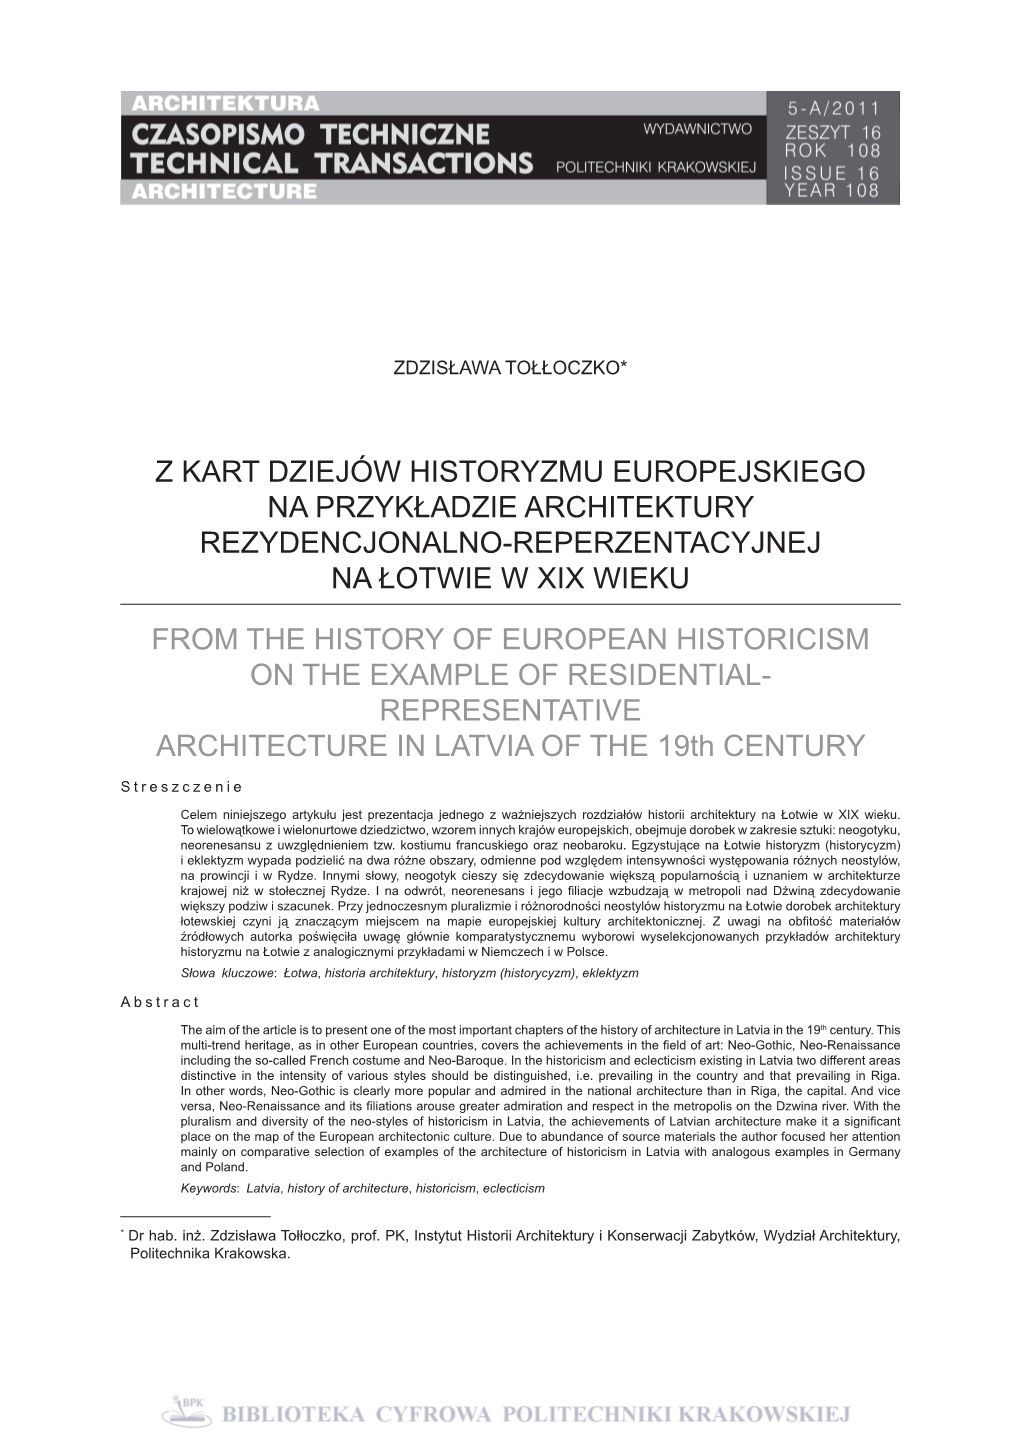 Z Kart Dziejów Historyzmu Europejskiego Na Przykładzie Architektury Rezydencjonalno-Reperzentacyjnej Na Łotwie W Xix Wieku